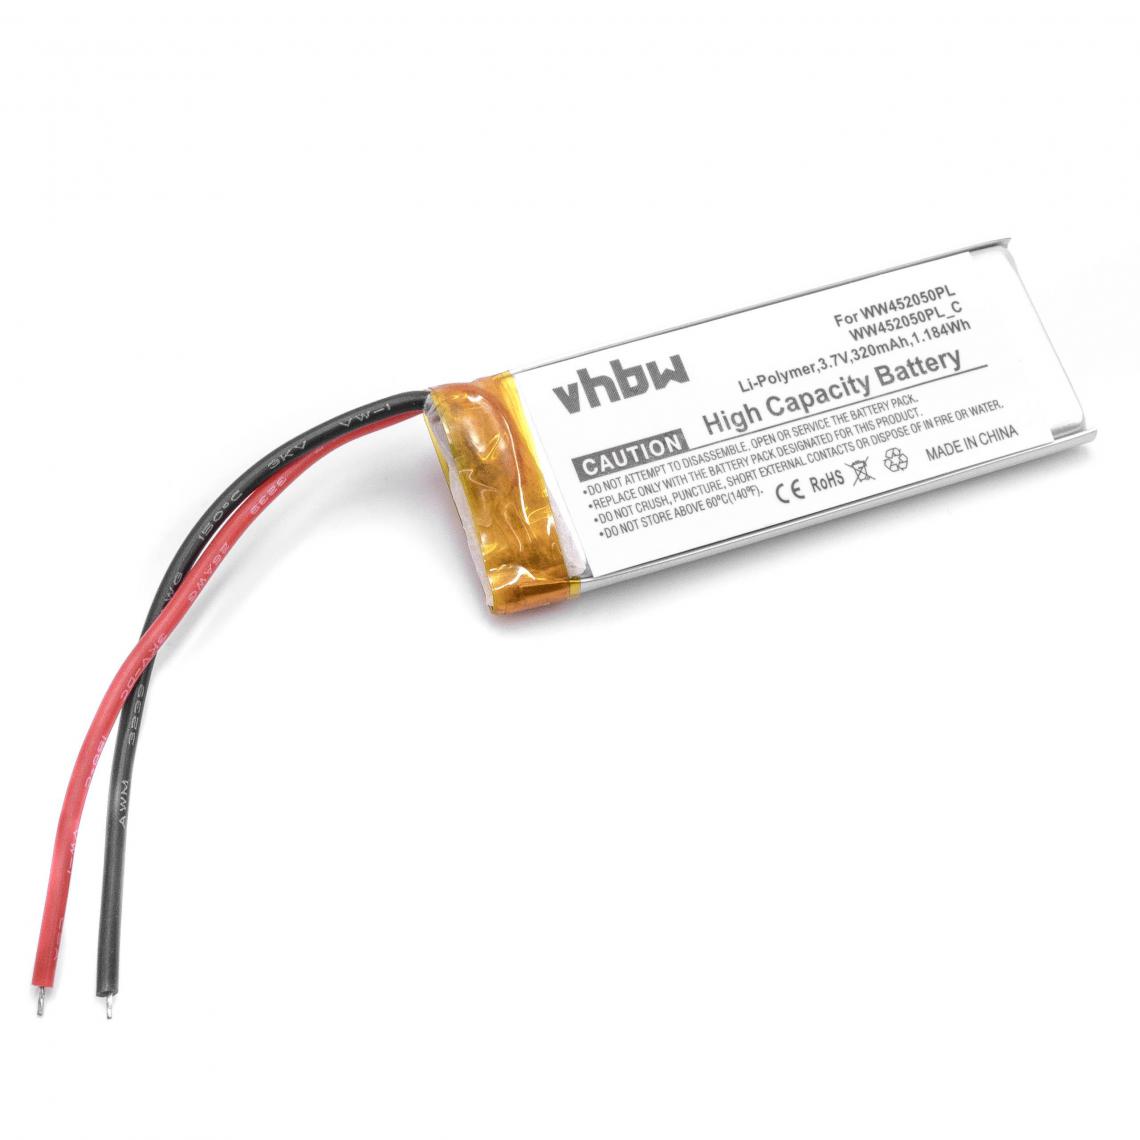 Vhbw - vhbw batterie Li-Polymer 320mAh (3.7V) pour casque, écouteurs Cardo CQ1, Q3, Scala Rider Q3, FM, Solo comme WW452050PL, WW452050PL_C. - Autre appareil de mesure